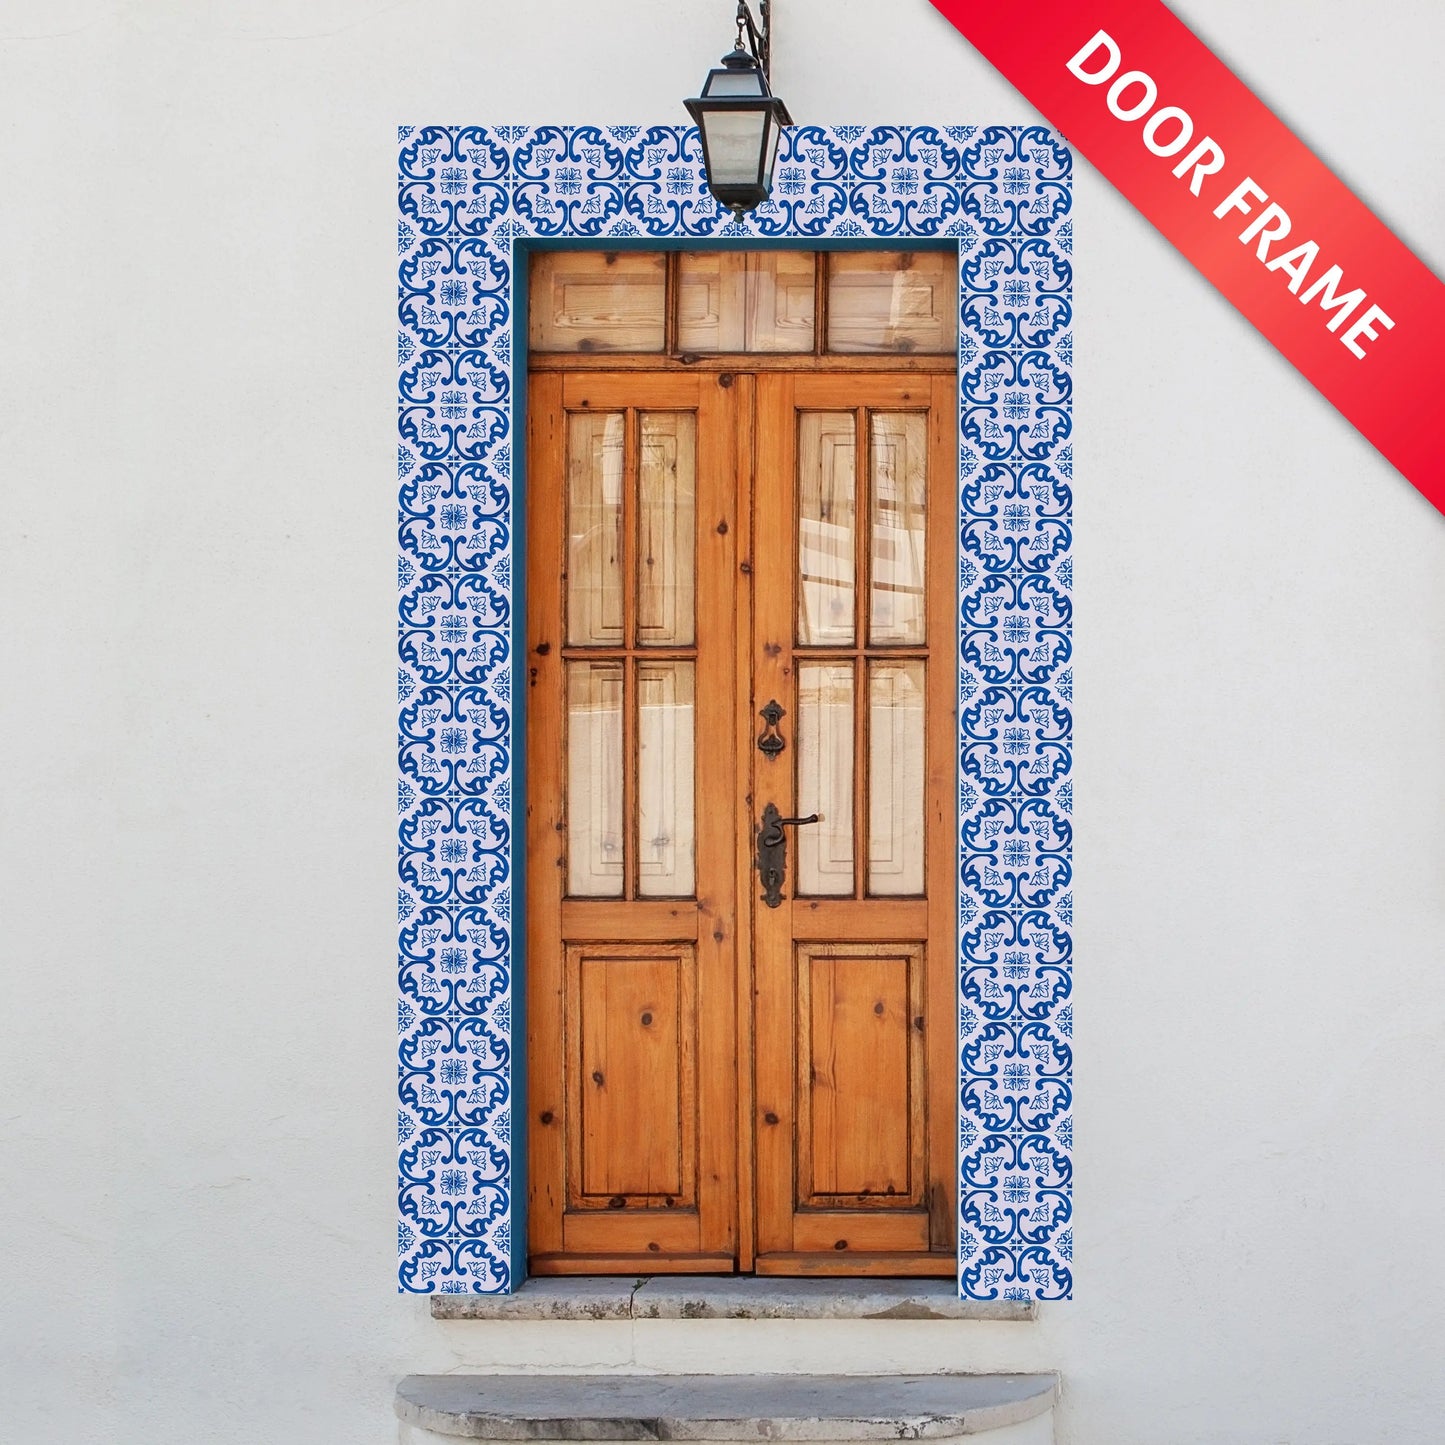 Portuguese Inspired Azulejos Delicate Pink Ceramic Tile Door Frame-Rooster Camisa